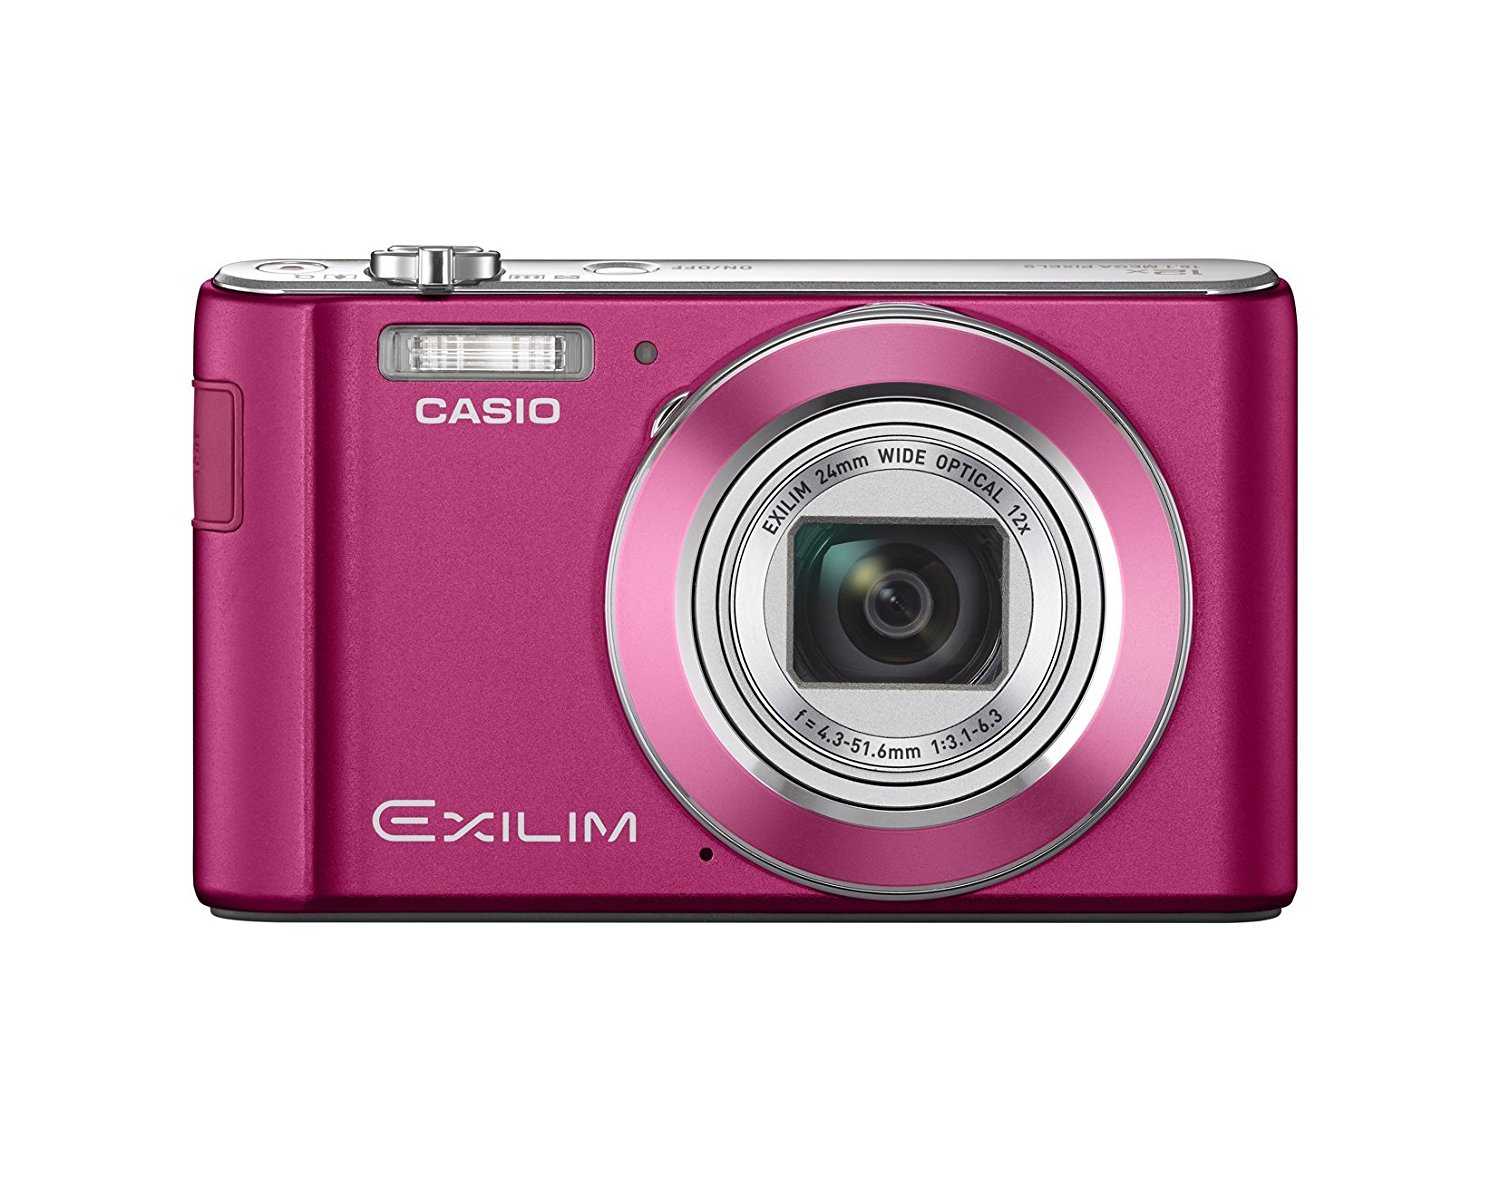 Цифровой фотоаппарат Casio Exilim EX-ZR100 - подробные характеристики обзоры видео фото Цены в интернет-магазинах где можно купить цифровую фотоаппарат Casio Exilim EX-ZR100